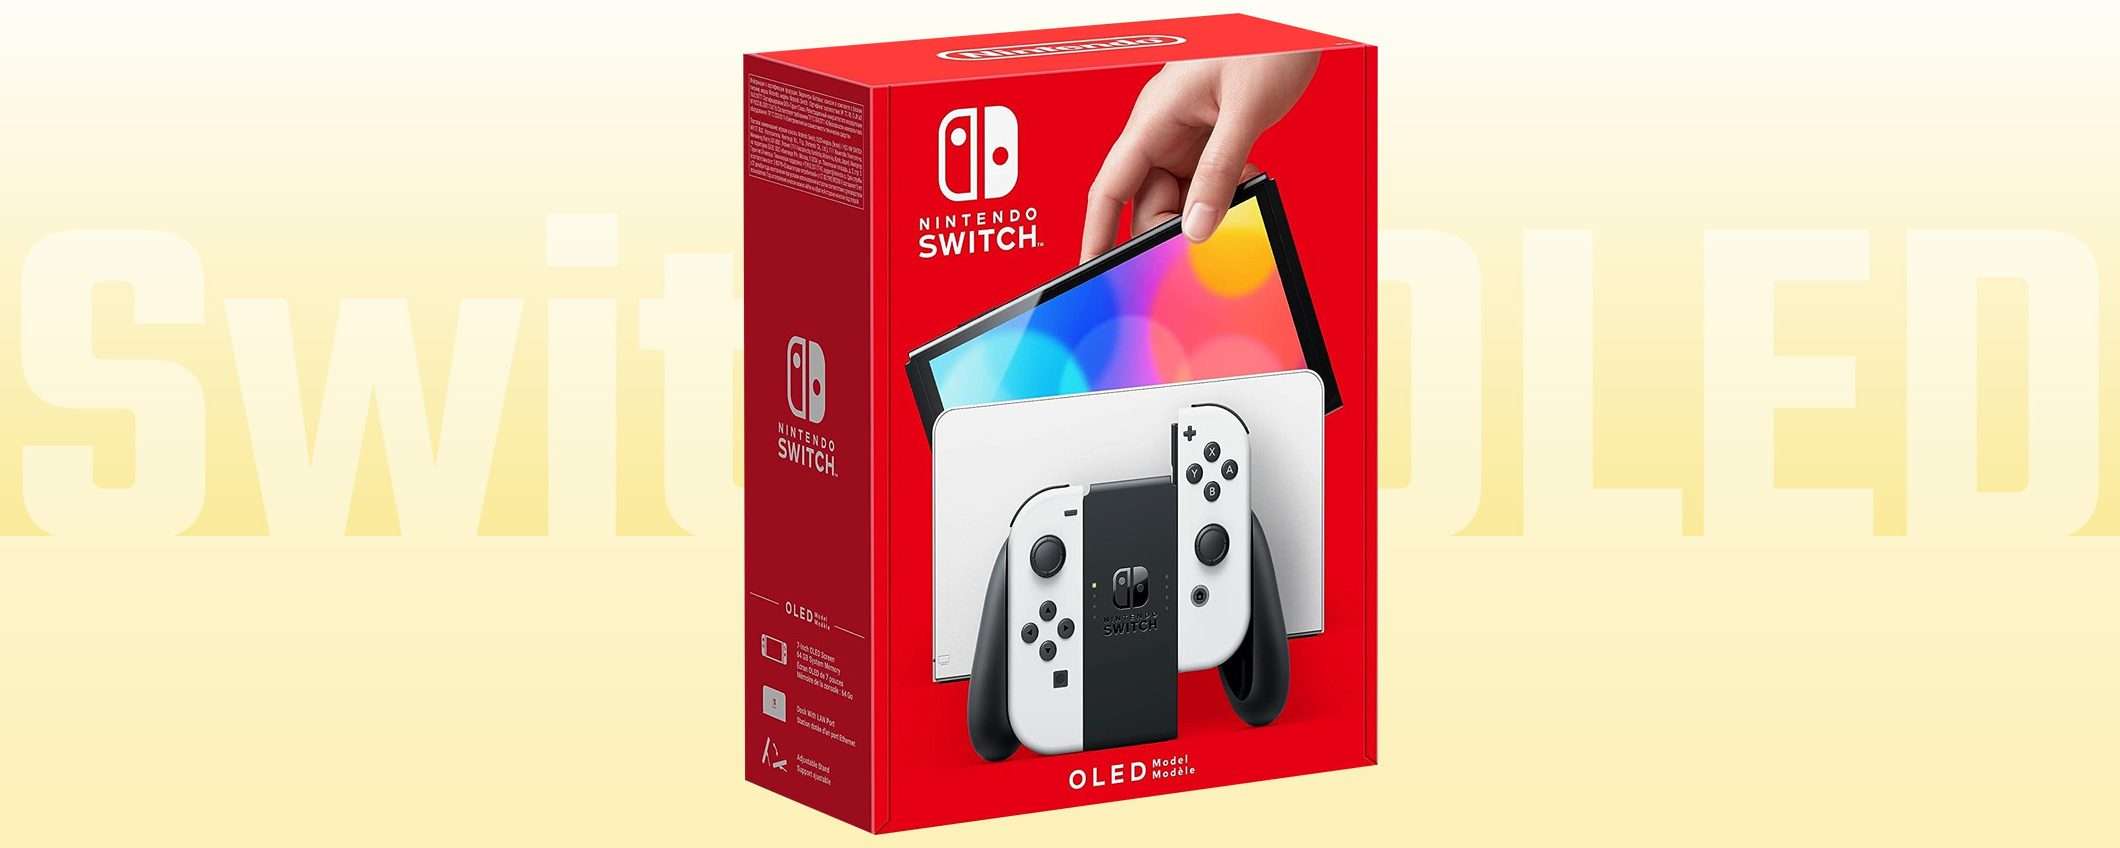 Solo 297€ per la Nintendo Switch OLED bianca su eBay